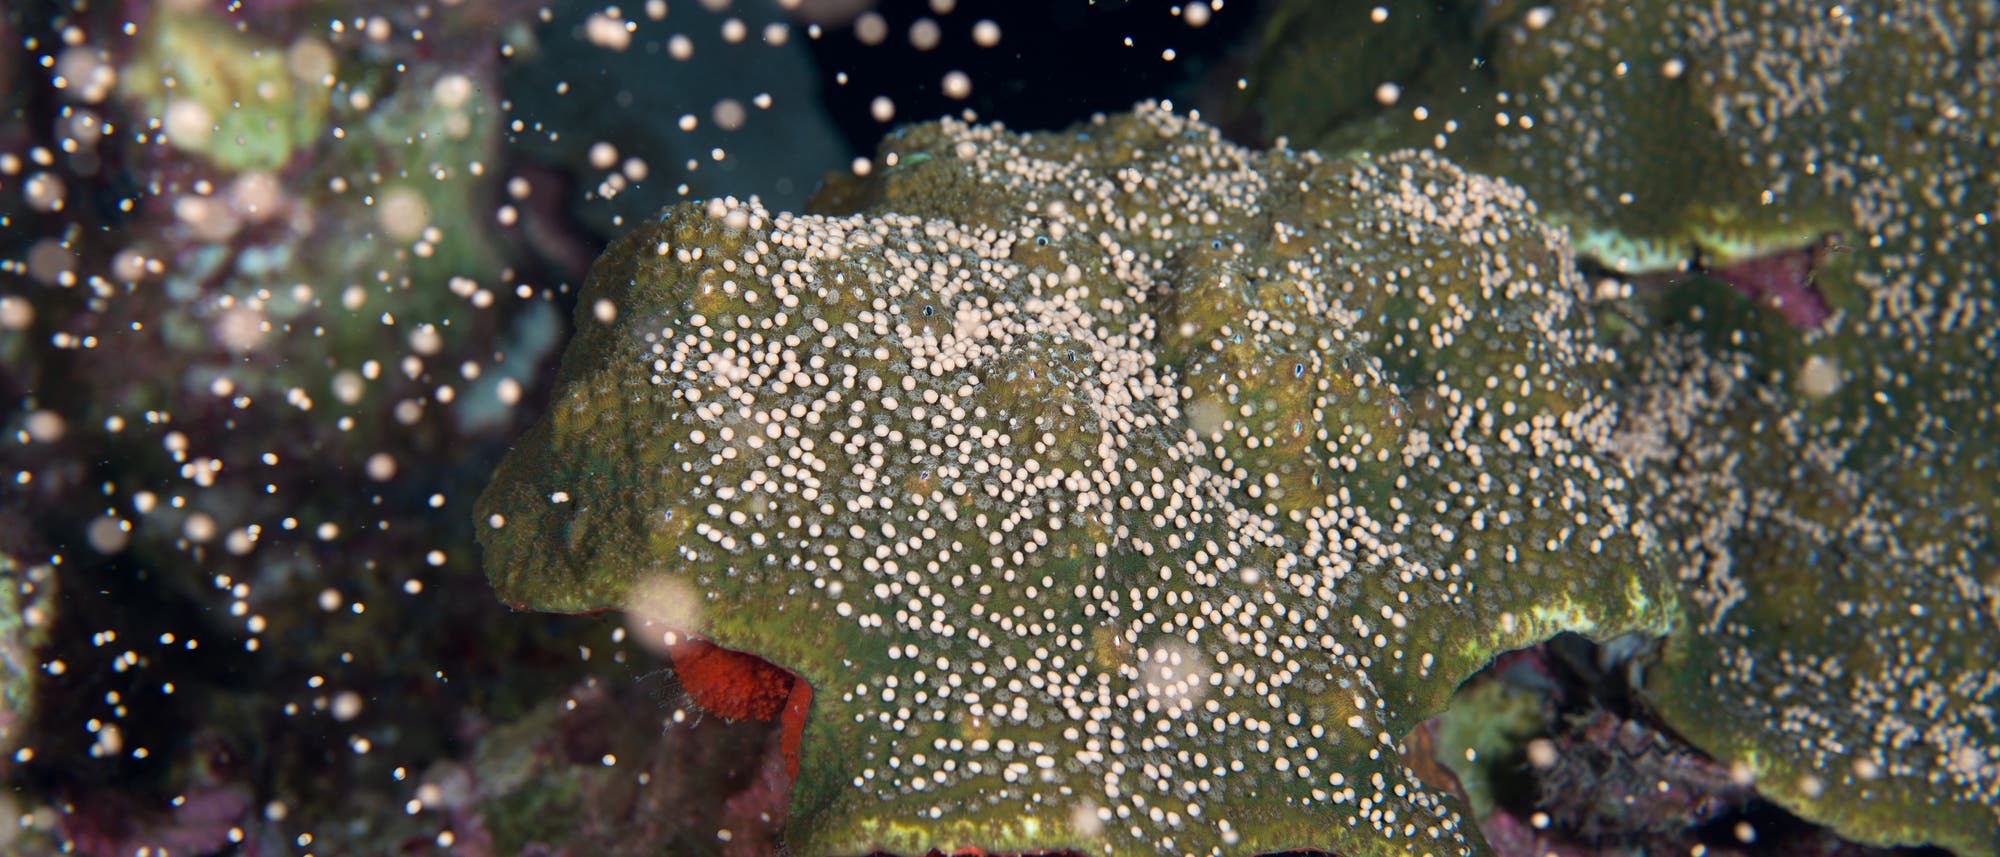 Korallen pflanzen sich fort, indem sie zur gleichen Zeit Millionen von Eizellen und Spermien ins Meerwasser abgeben.